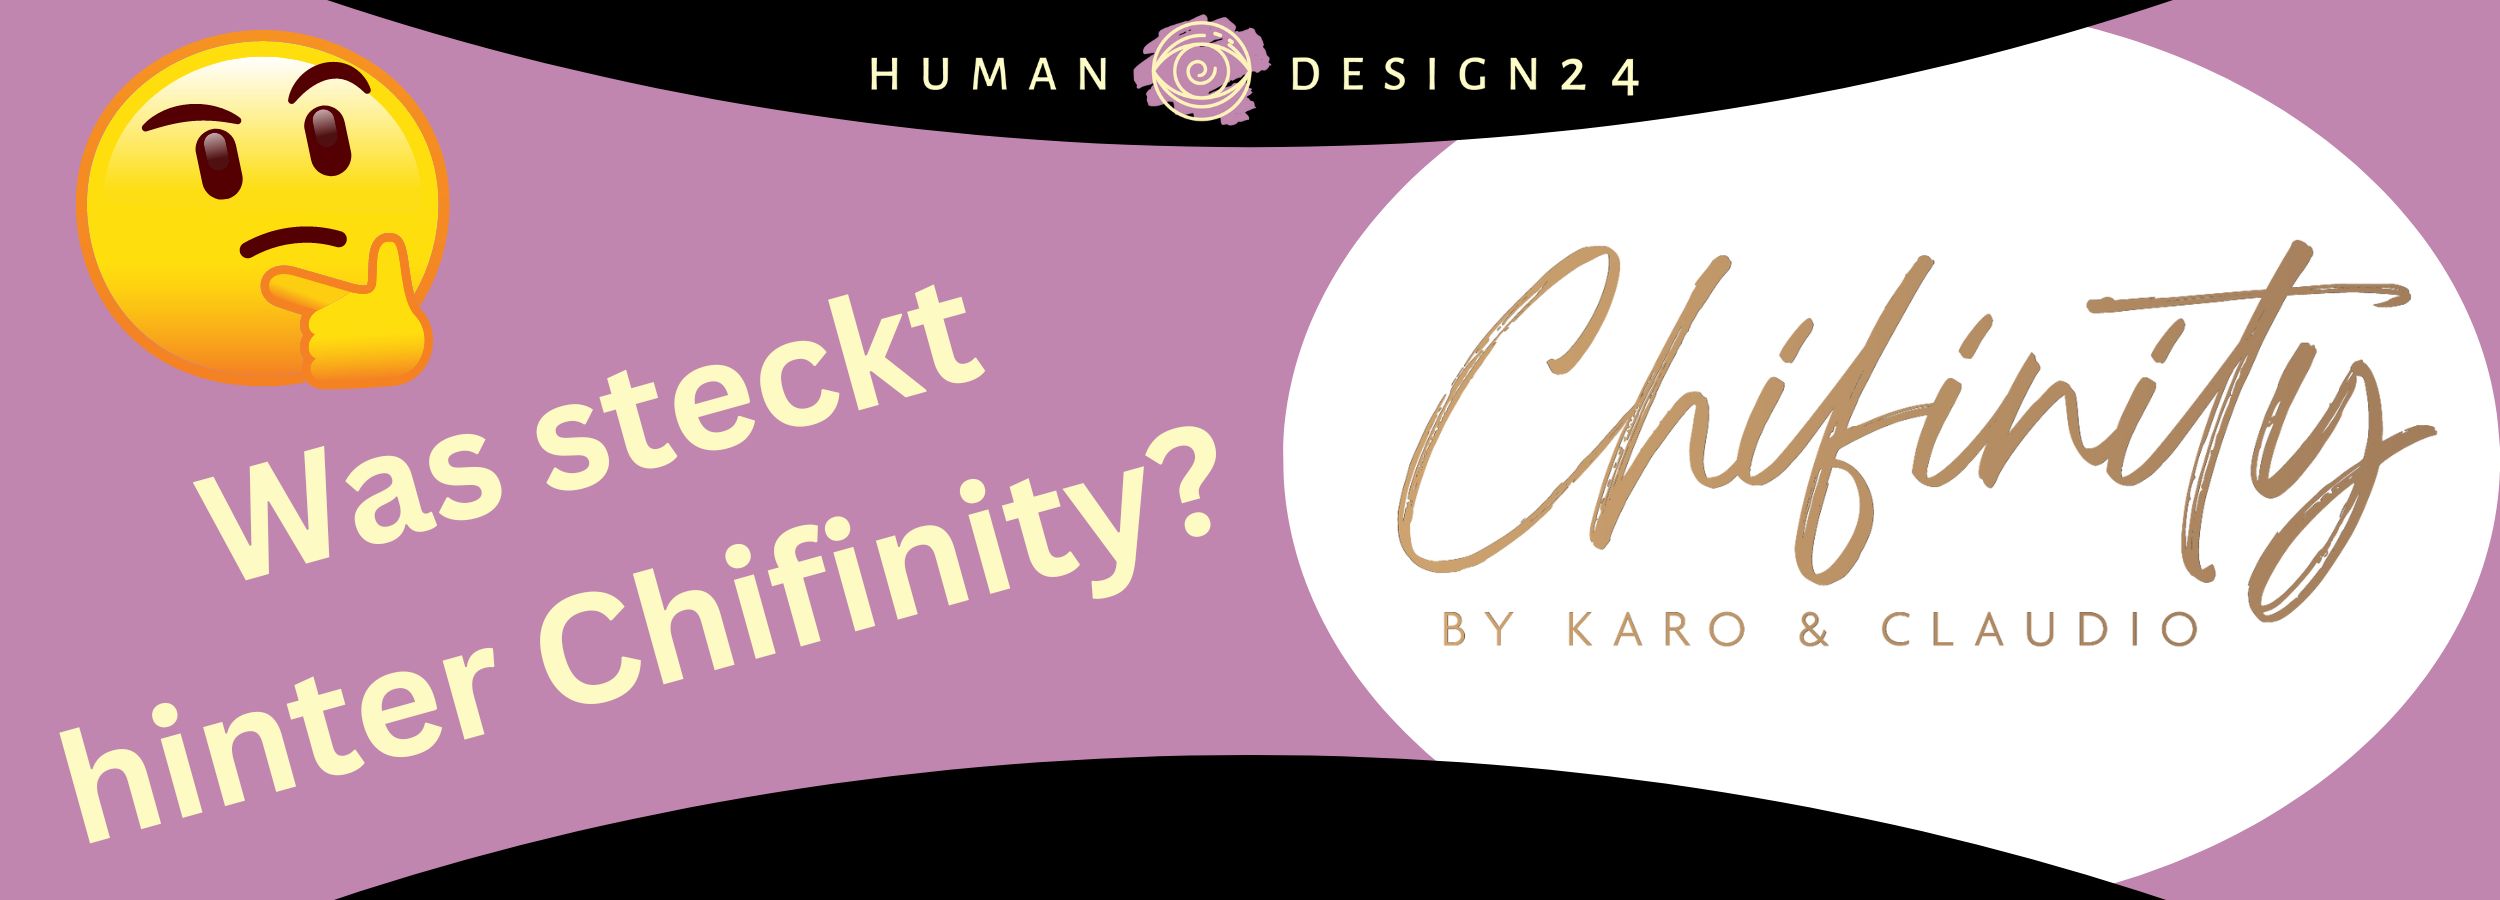 Chifinity - Was genau verbirgt sich hinter der Marke von Karo und Claudio?